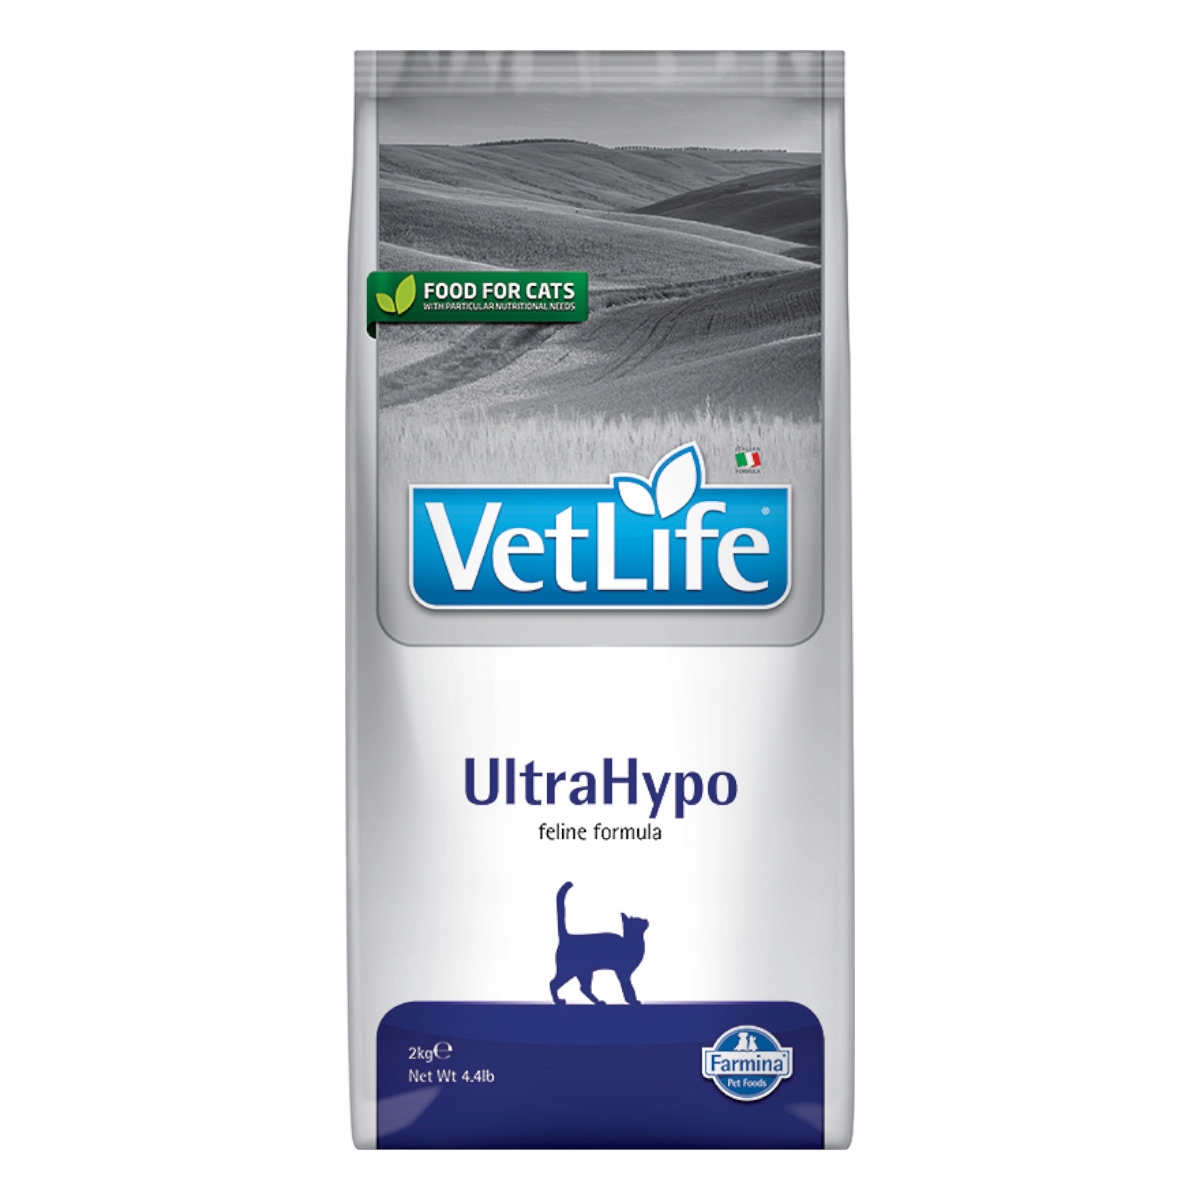 Корм vet life ultrahypo. Фармина ультрагипо для собак. Farmina vet Life ULTRAHYPO. Ветлайф корм для собак. Фармина obesity для собак.